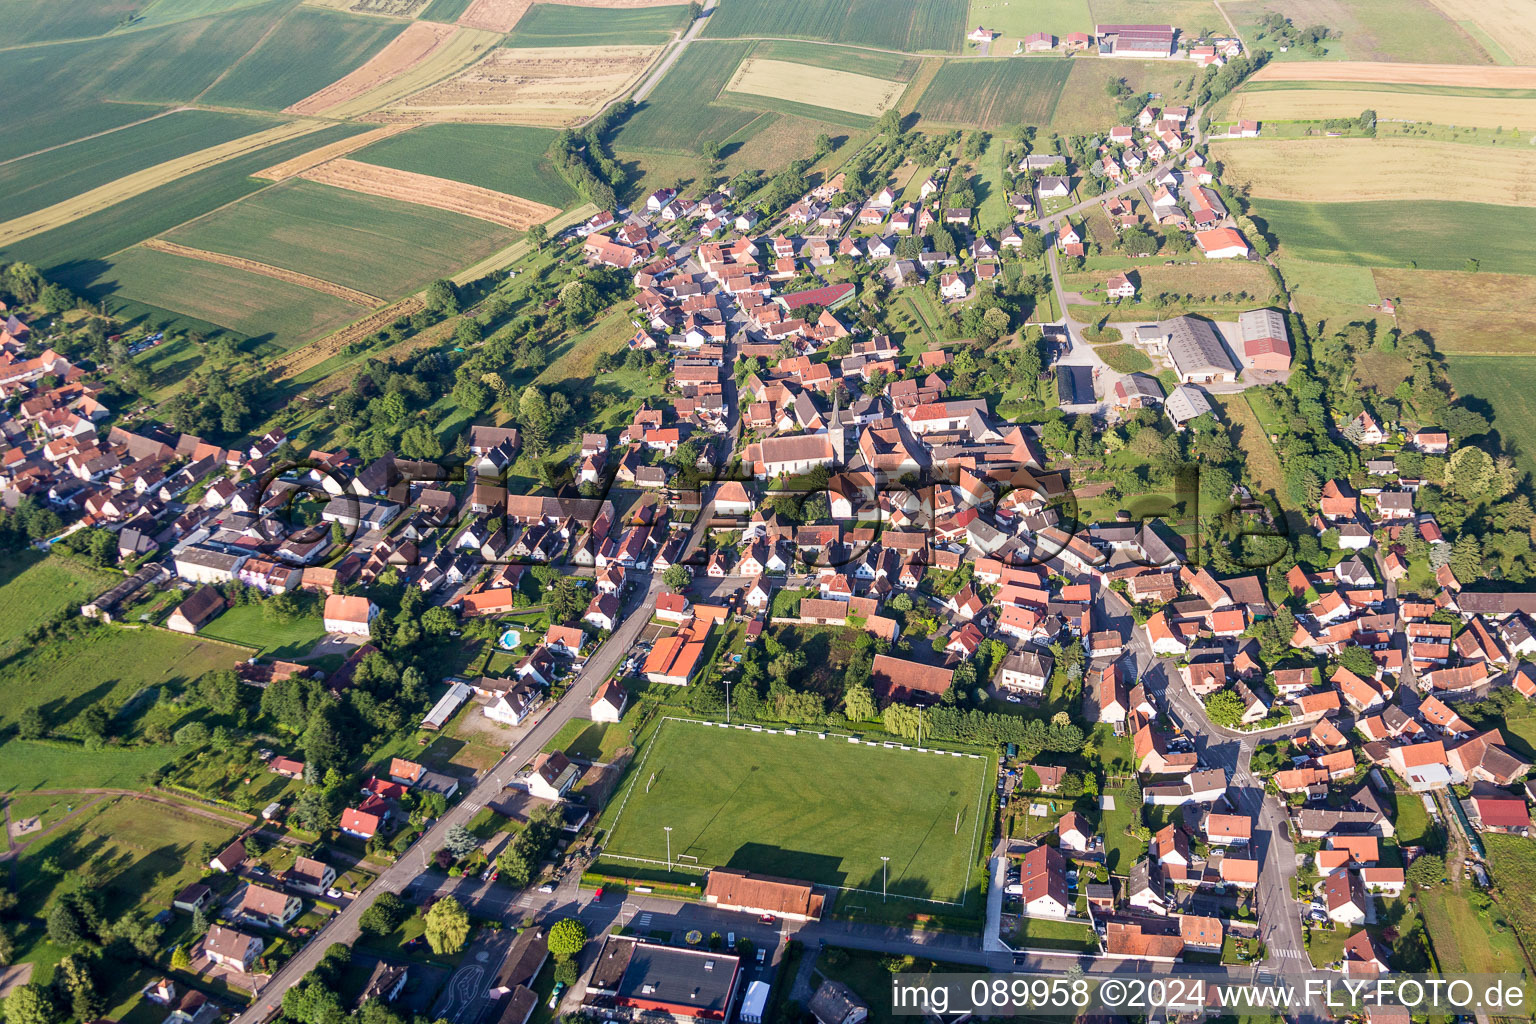 Luftbild von Dorf - Ansicht am Rande von landwirtschaftlichen Feldern und Nutzflächen in Riedseltz in Grand Est im Bundesland Bas-Rhin, Frankreich